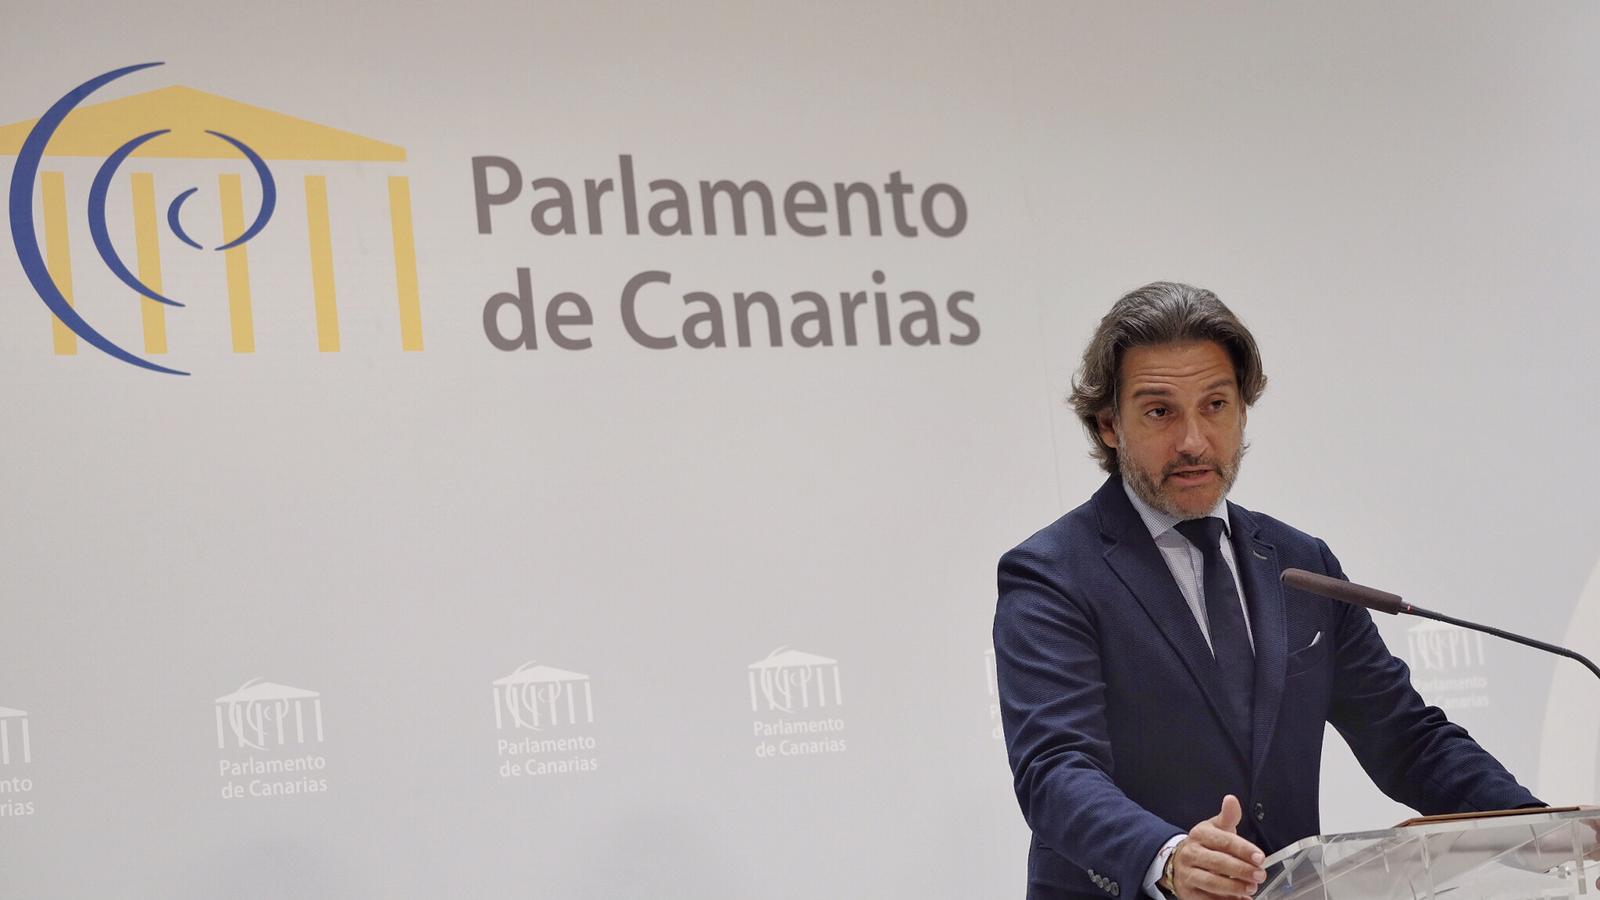 El presidente del Parlamento de Canarias durante la rueda de prensa sobre la presidencia canaria de los parlamentos regionales de la UE para 2020